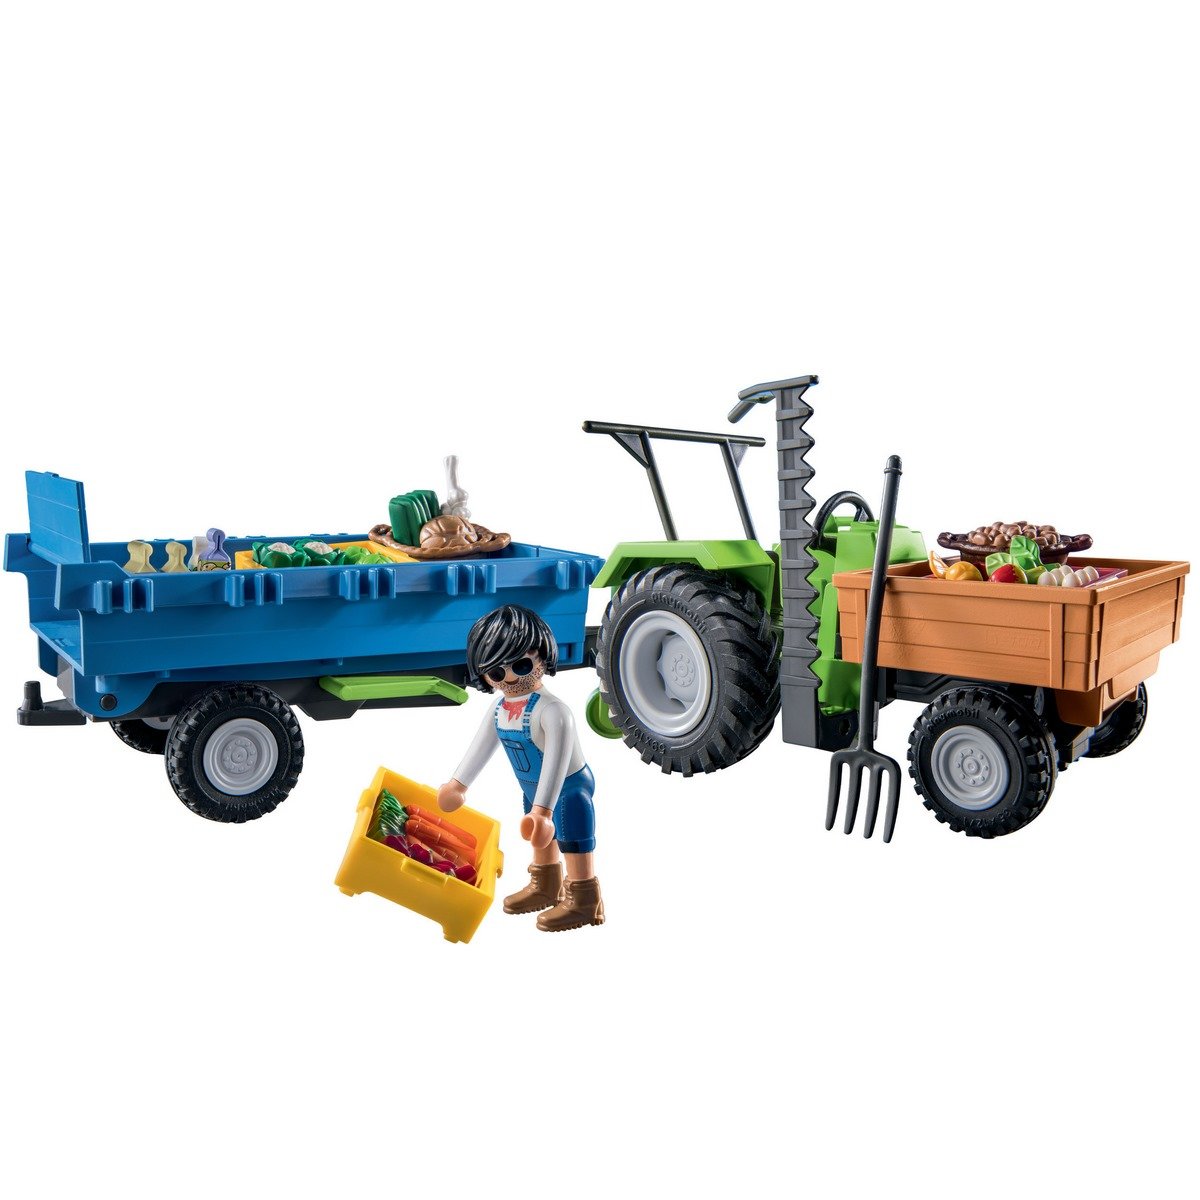 Jouets de tracteur agricole pour enfants avec remorques-ensemble